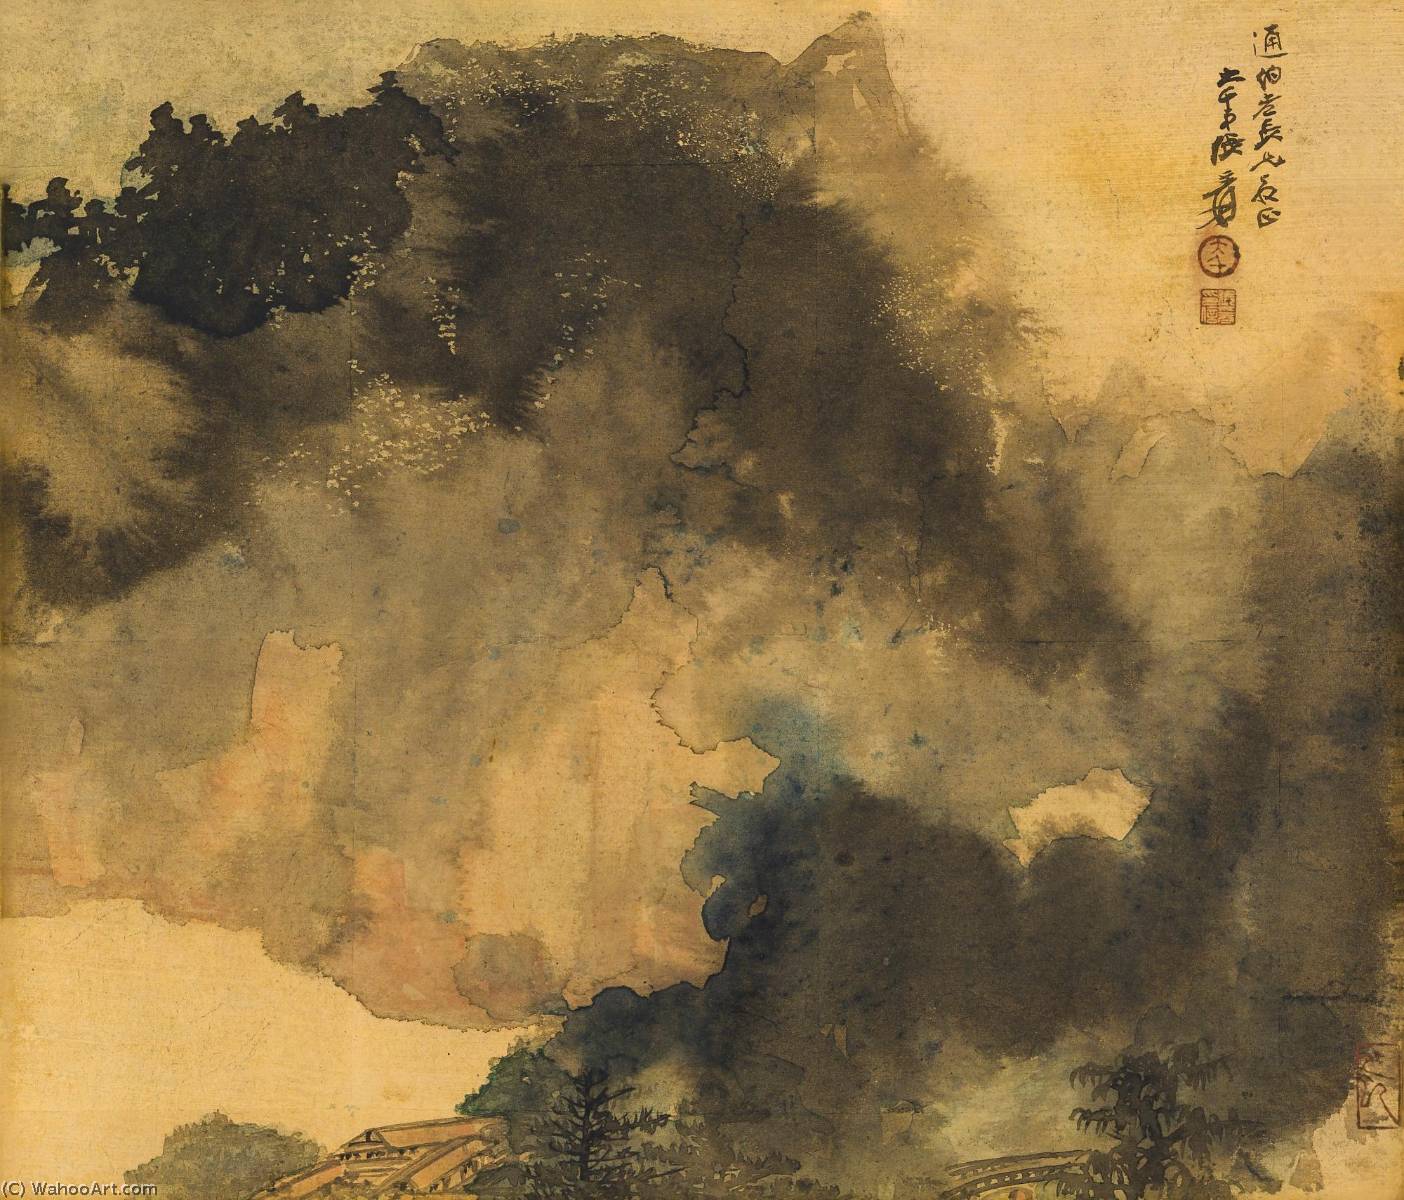 WikiOO.org - Encyclopedia of Fine Arts - Lukisan, Artwork Zhang Daqian - Mountain Retreat in Solitude